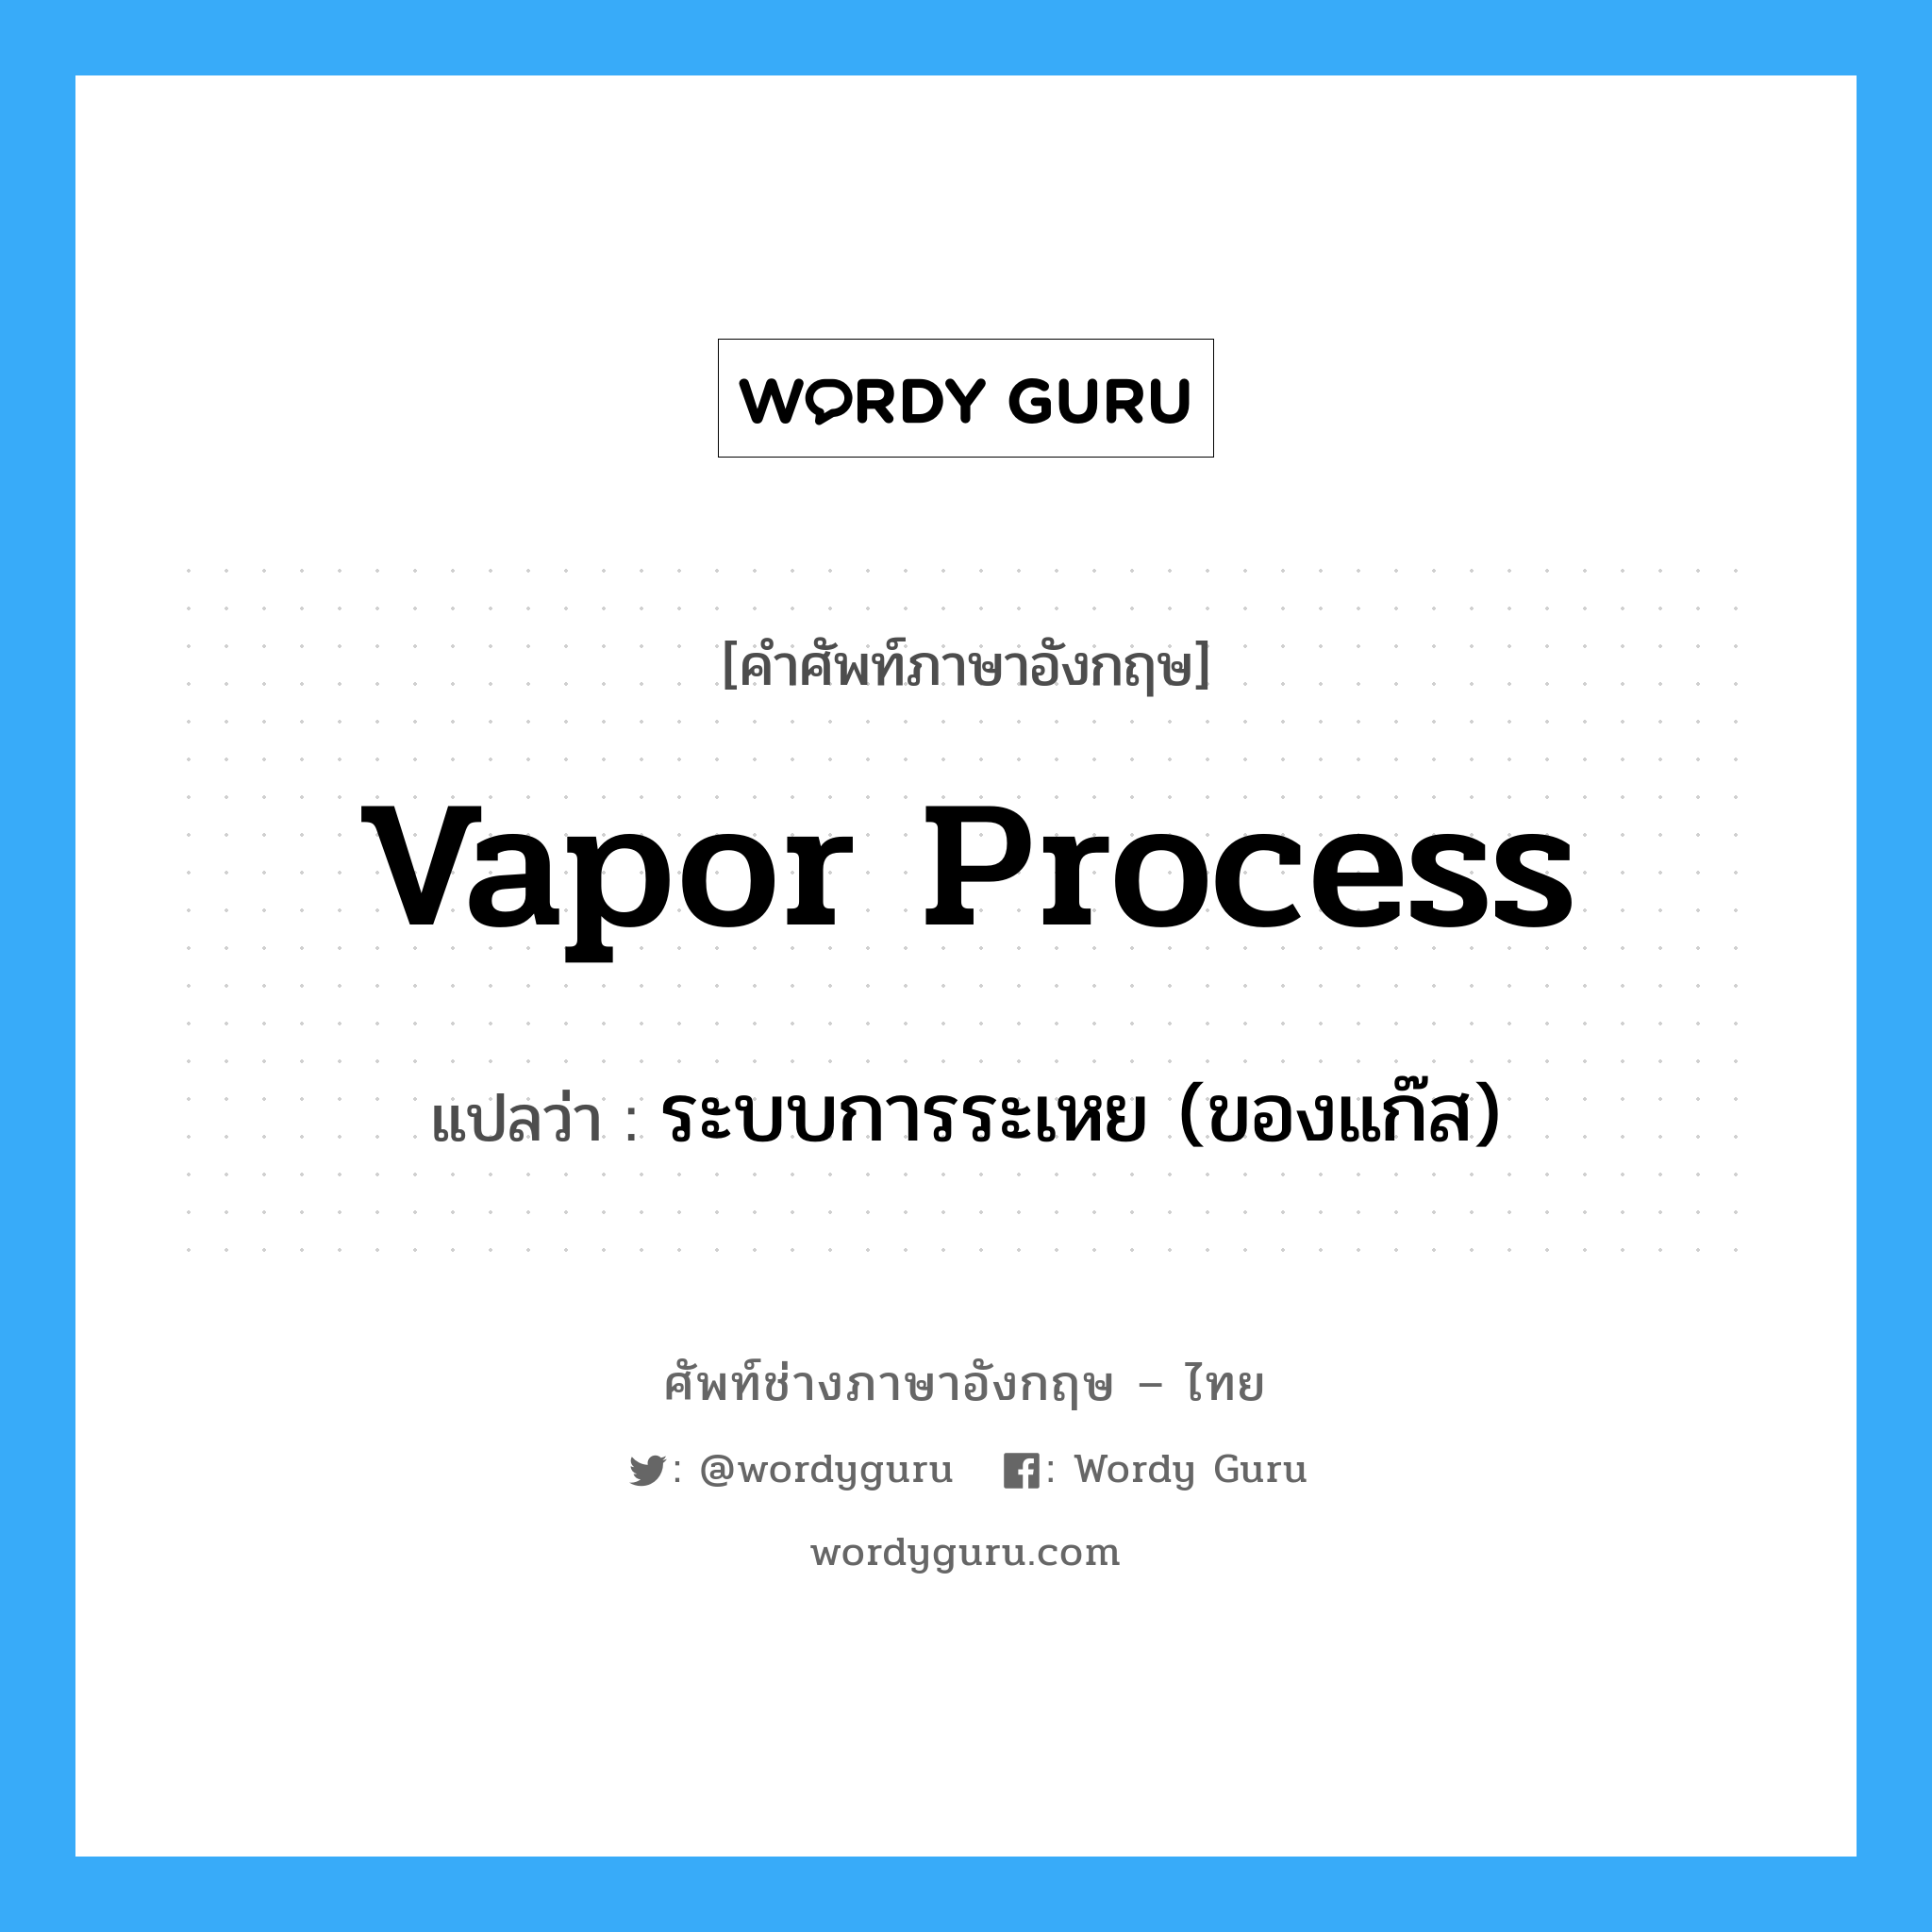 vapor process แปลว่า?, คำศัพท์ช่างภาษาอังกฤษ - ไทย vapor process คำศัพท์ภาษาอังกฤษ vapor process แปลว่า ระบบการระเหย (ของแก๊ส)